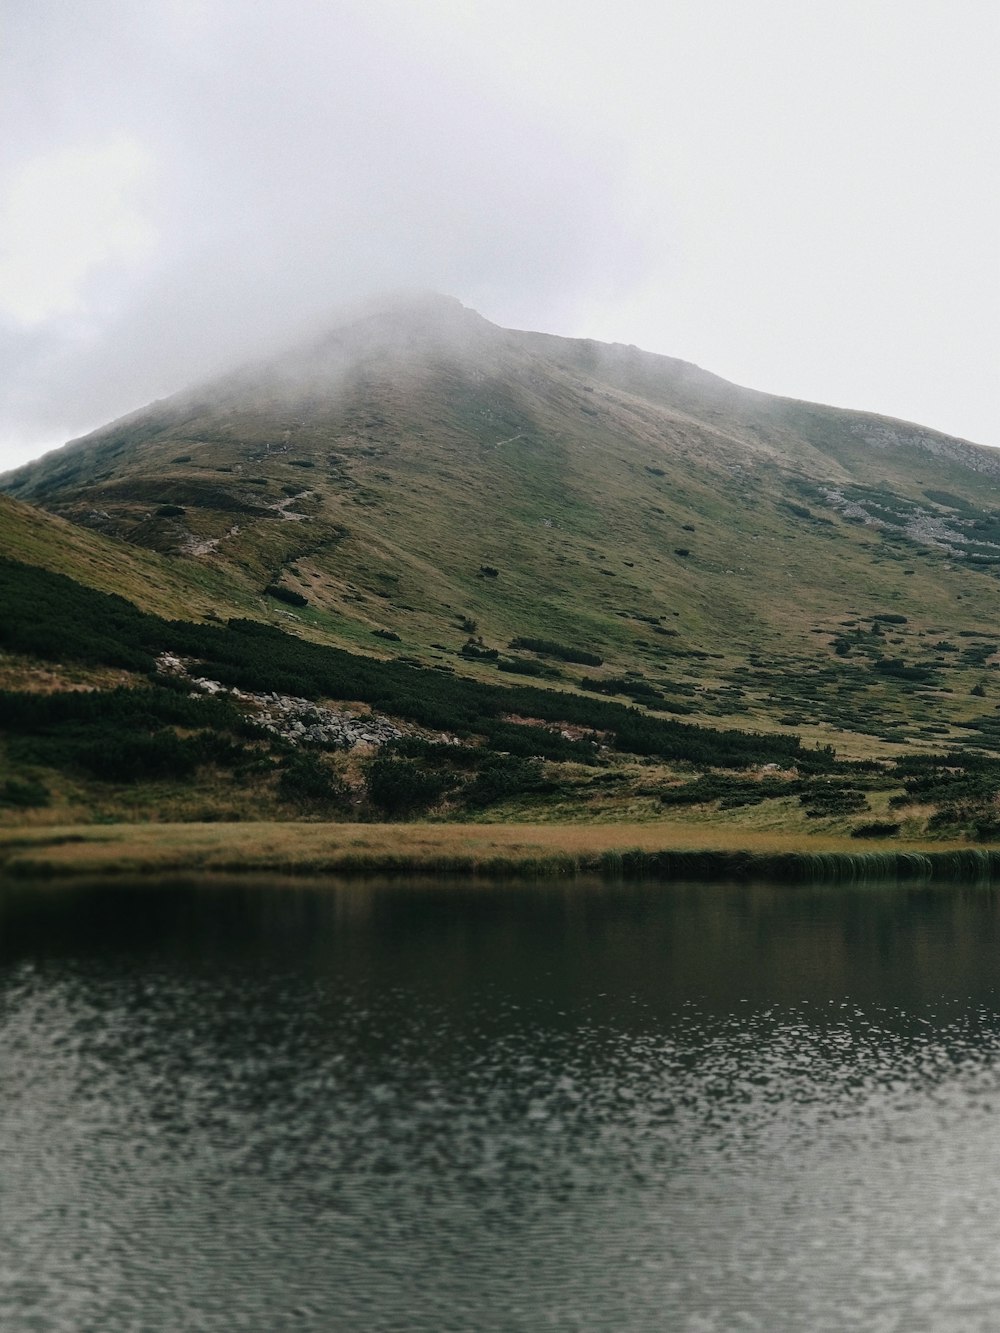 montagna verde e marrone accanto al lago